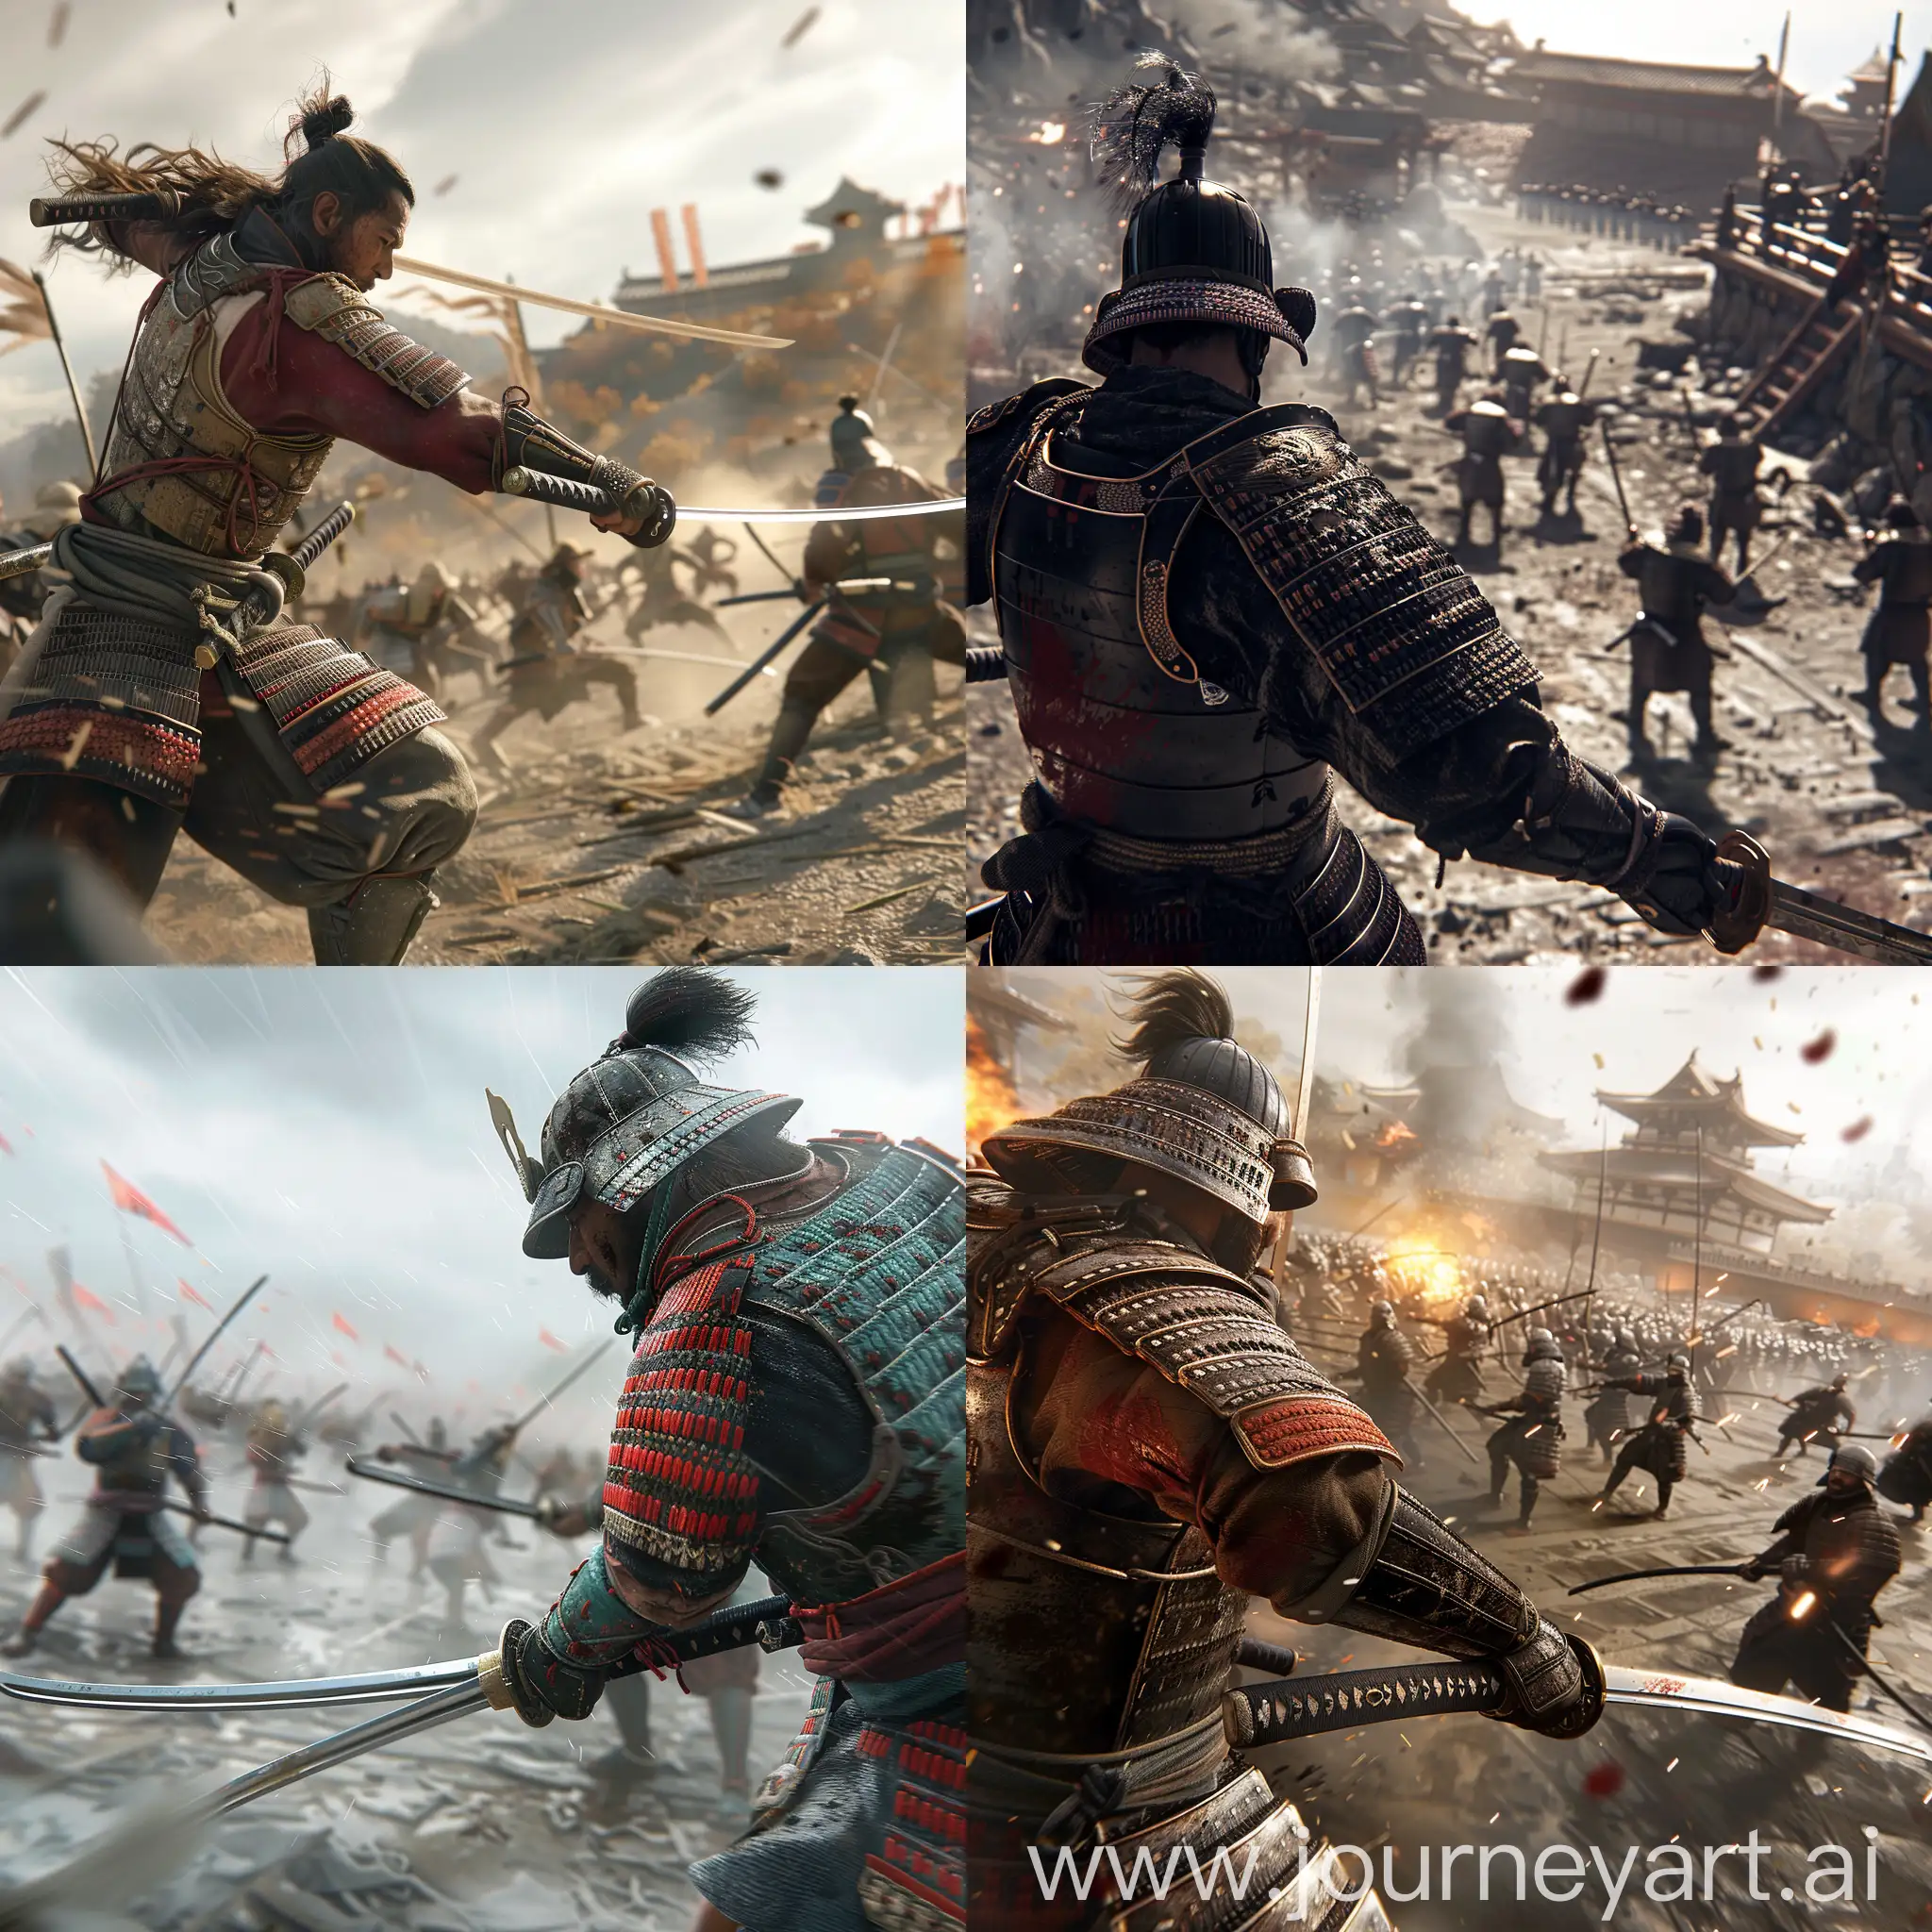 point of view shot, samurai weilding a sword on a battlefield